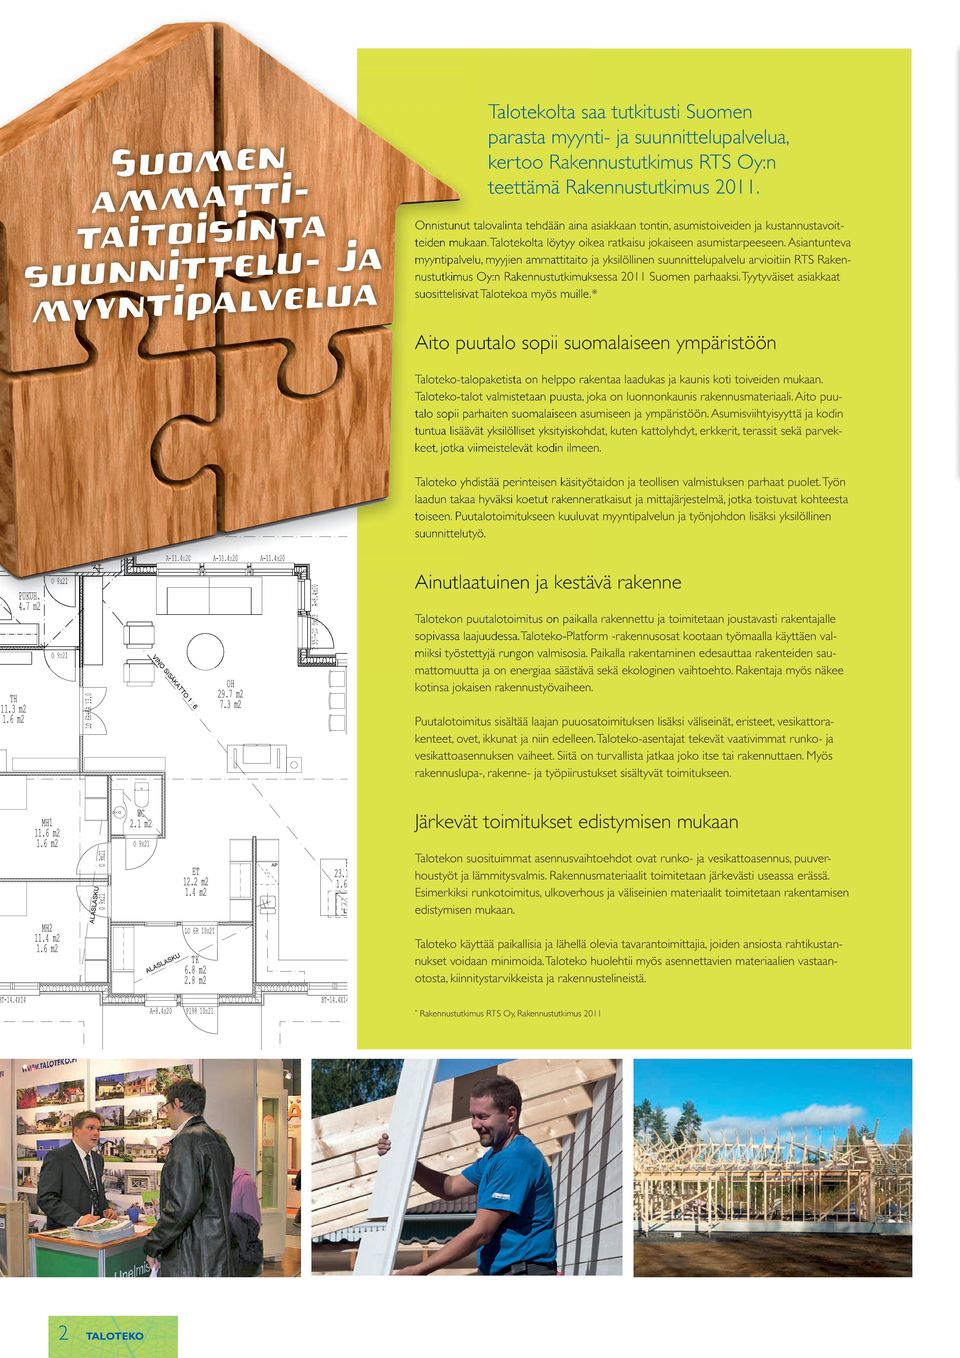 Asiantunteva myyntipalvelu, myyjien ammattitaito ja yksilöllinen suunnittelupalvelu arvioitiin RTS Rakennustutkimus Oy:n Rakennustutkimuksessa 2011 Suomen parhaaksi.